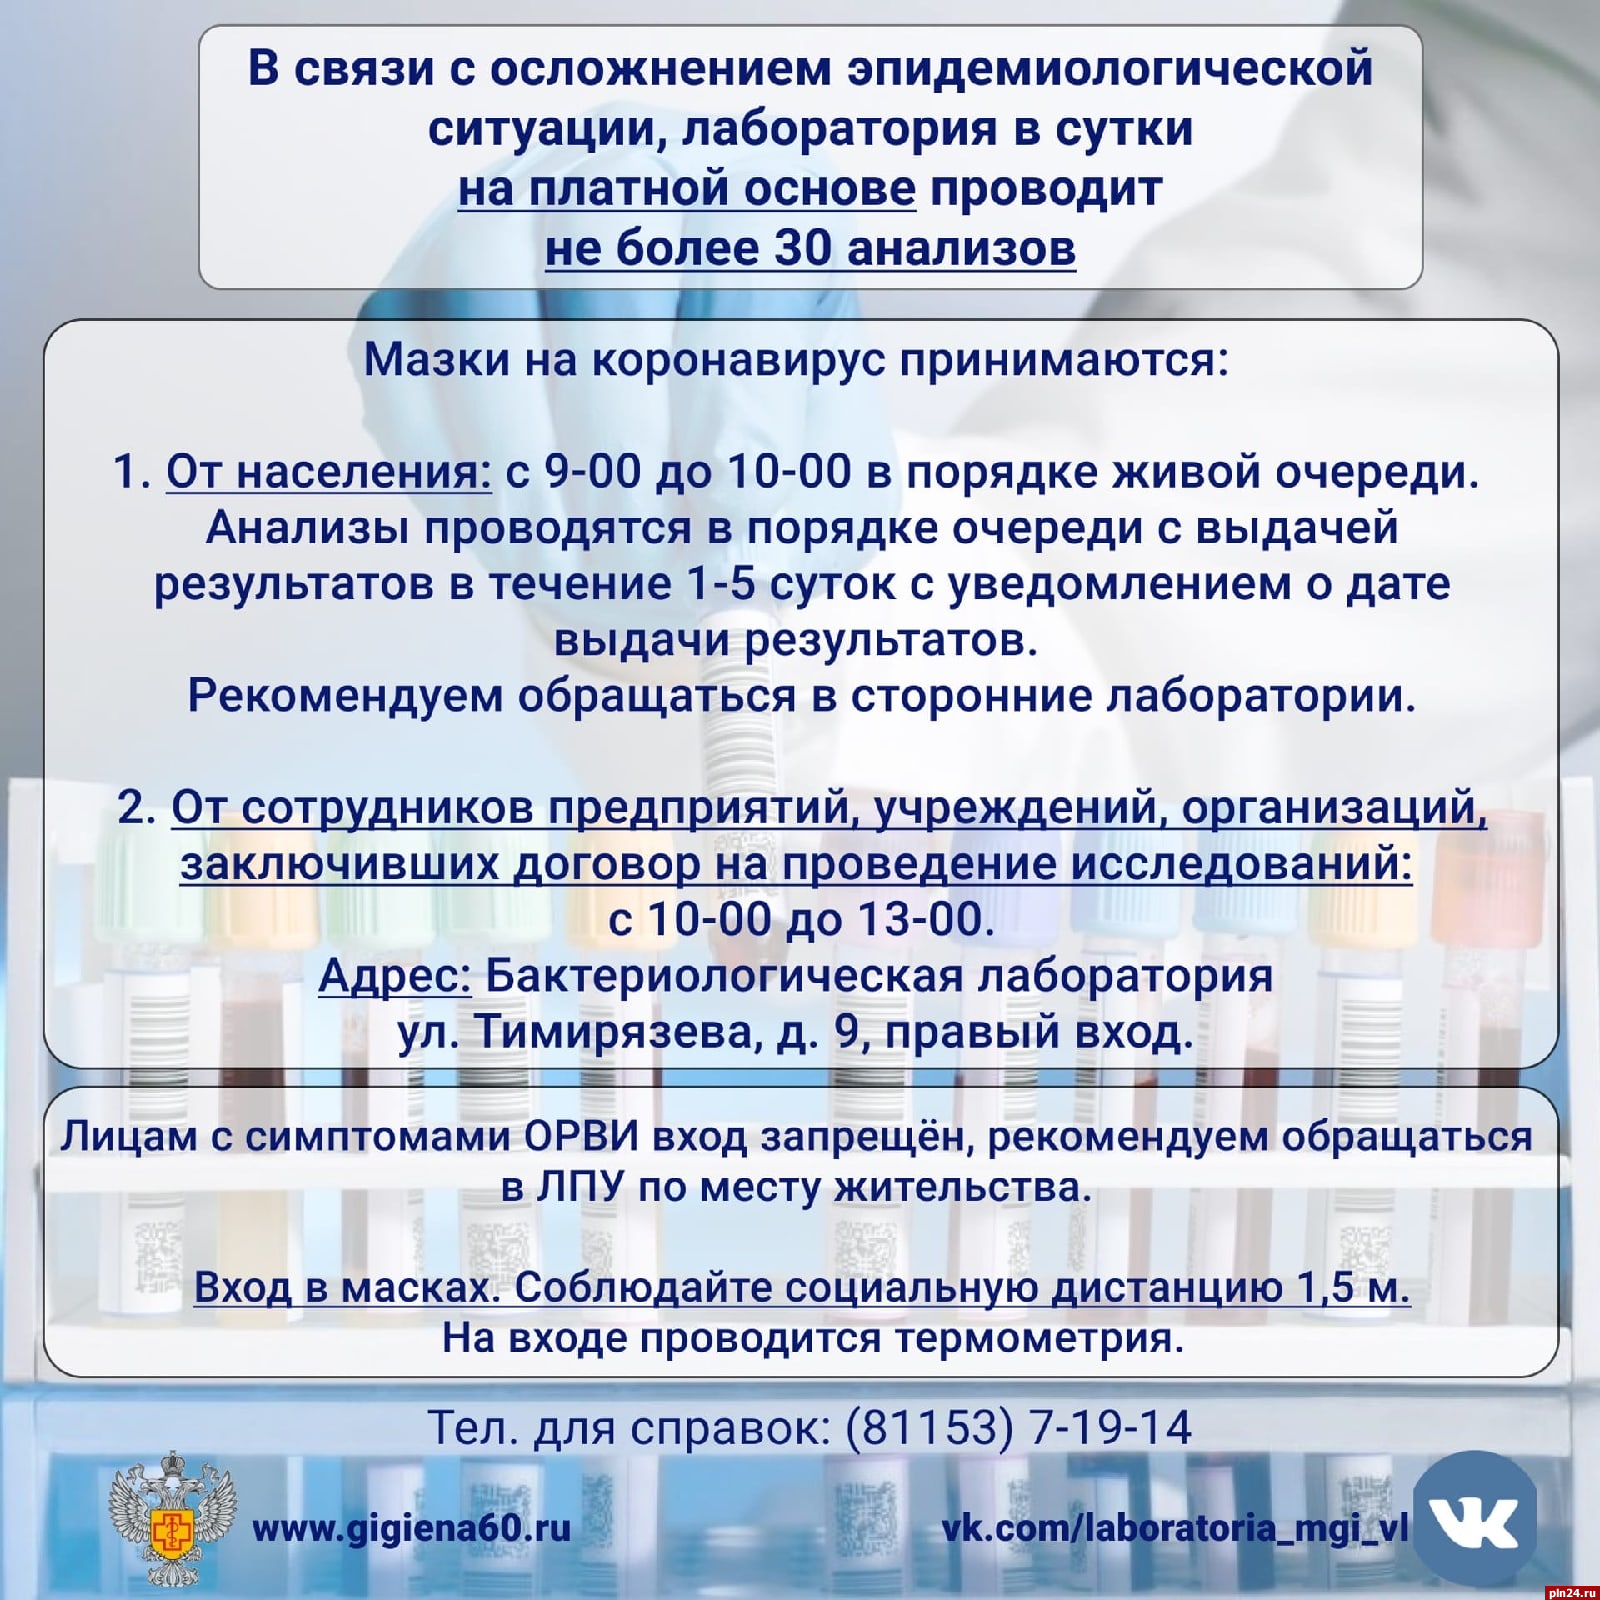 Фбуз центр гигиены и эпидемиологии тест. Центр гигиены и эпидемиологии в Псковской области Псков.